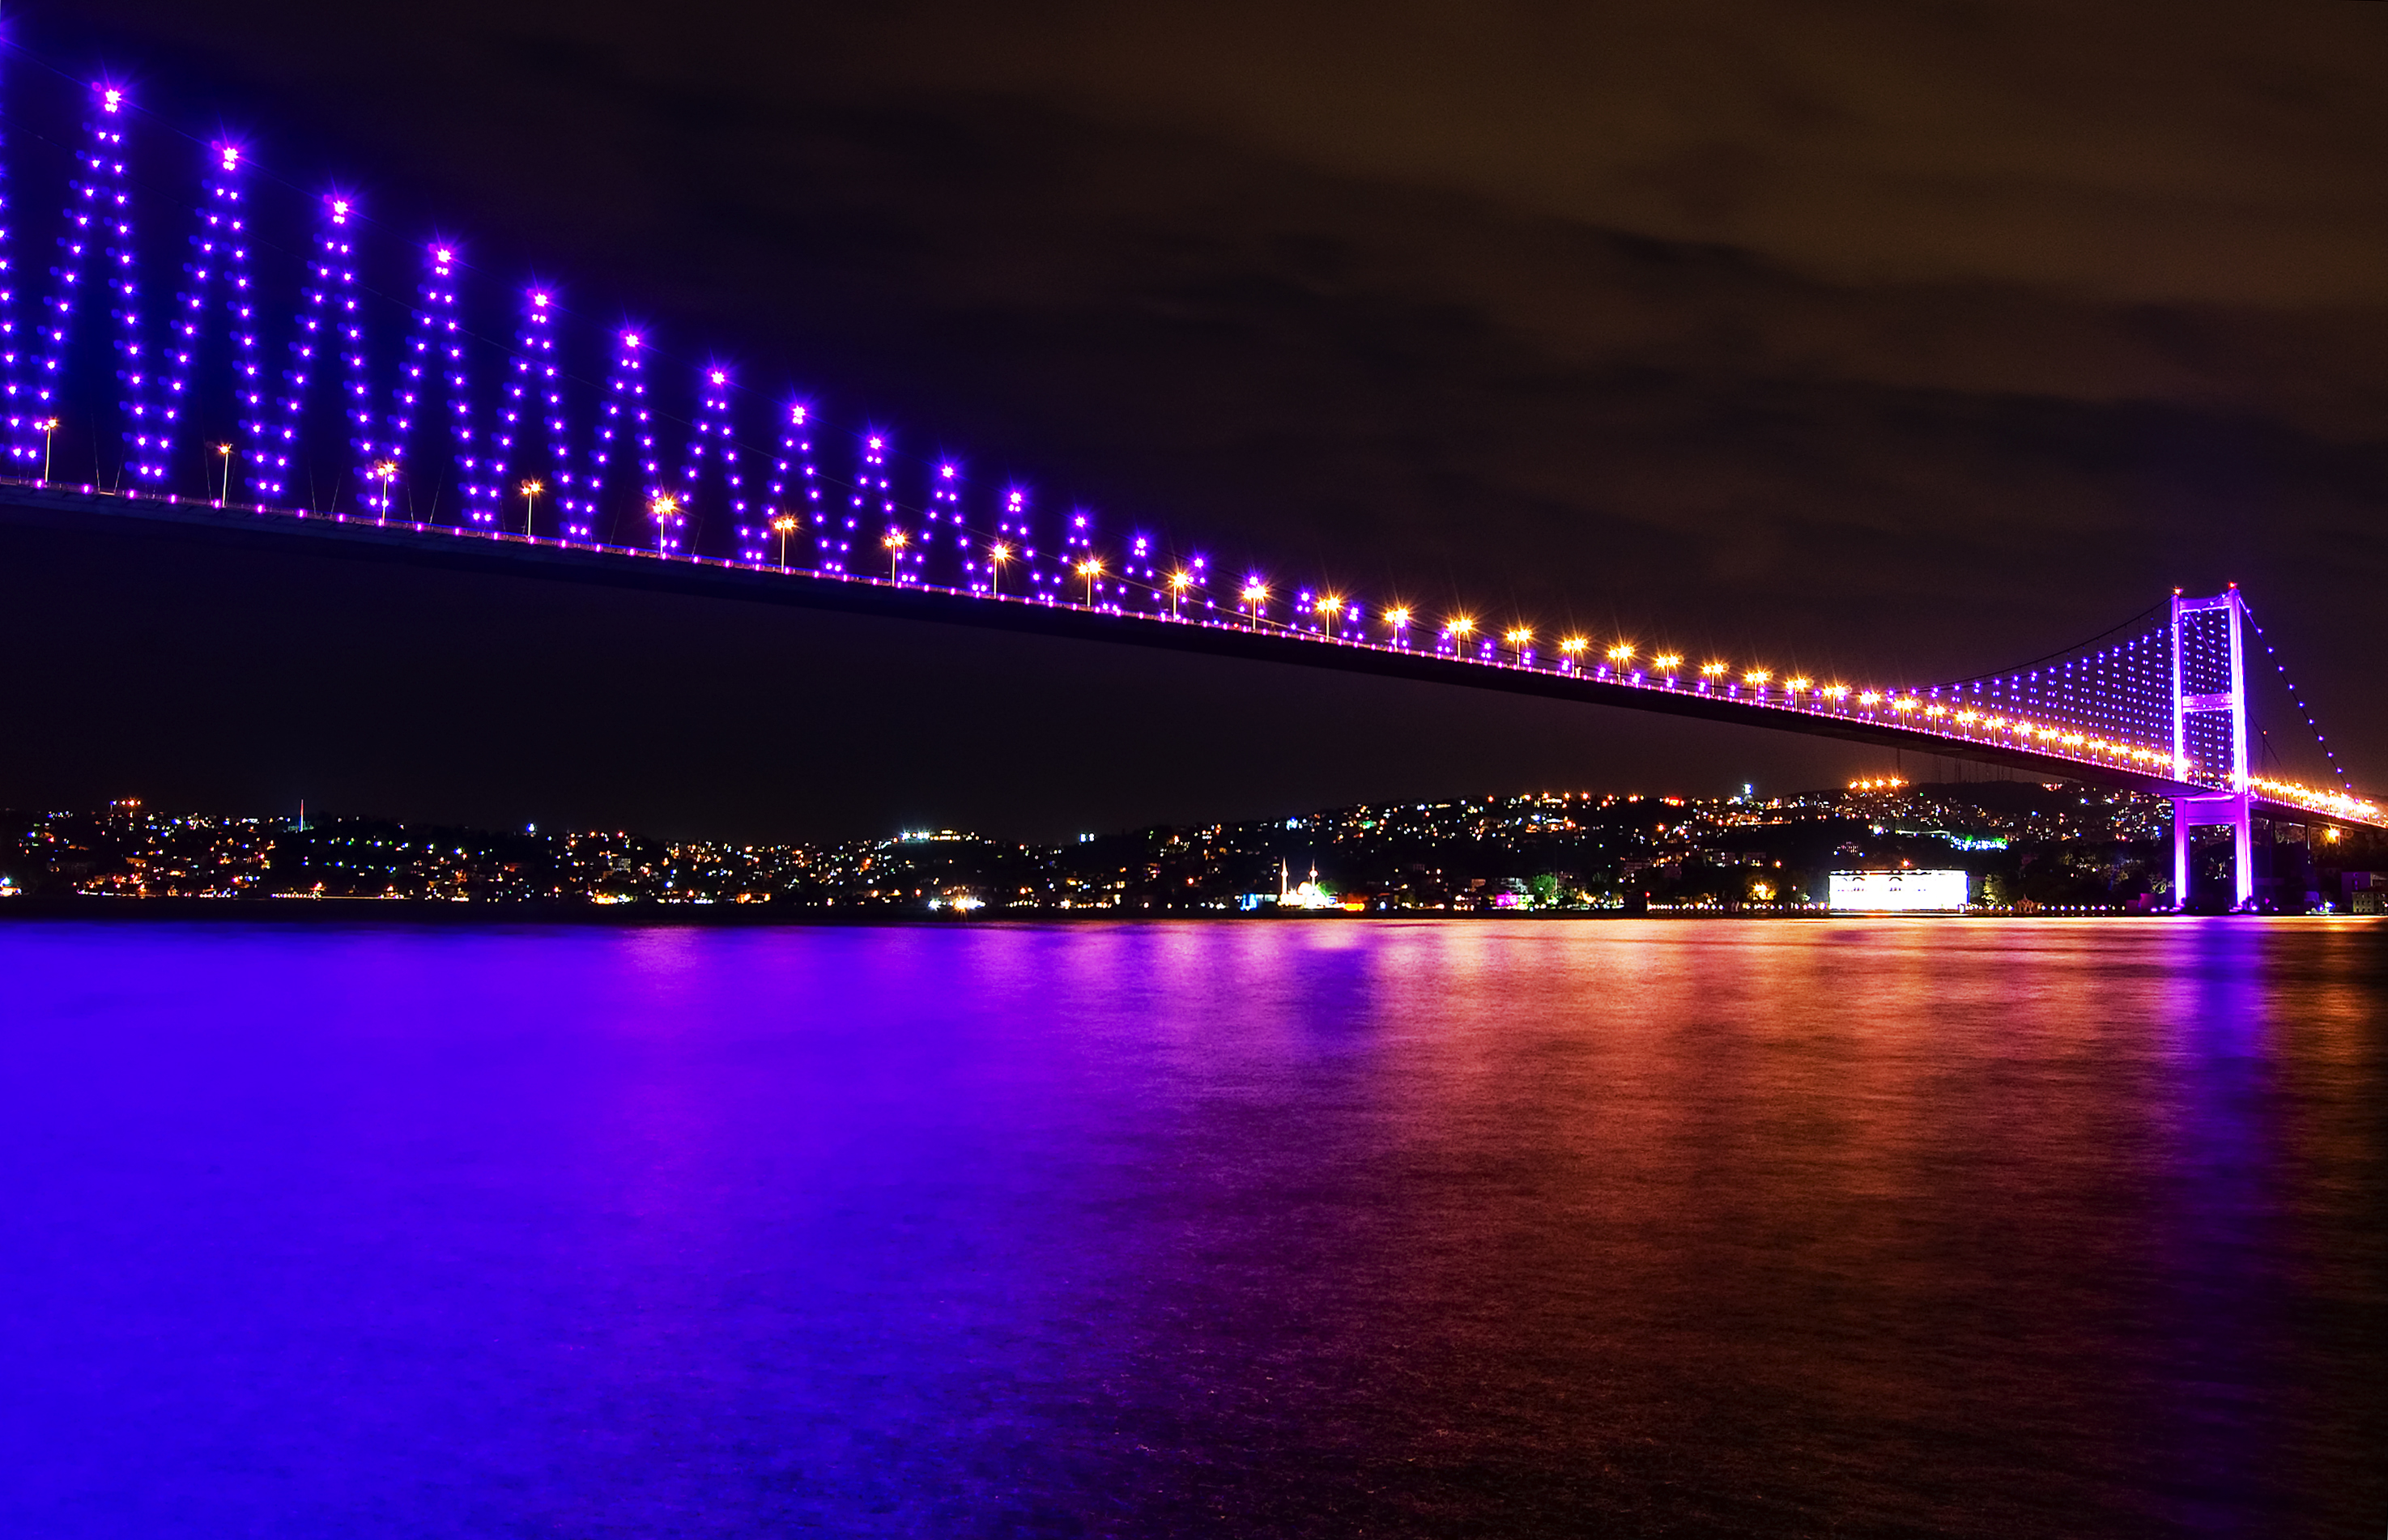 Bosphorus Bridge Bridge in Istanbul